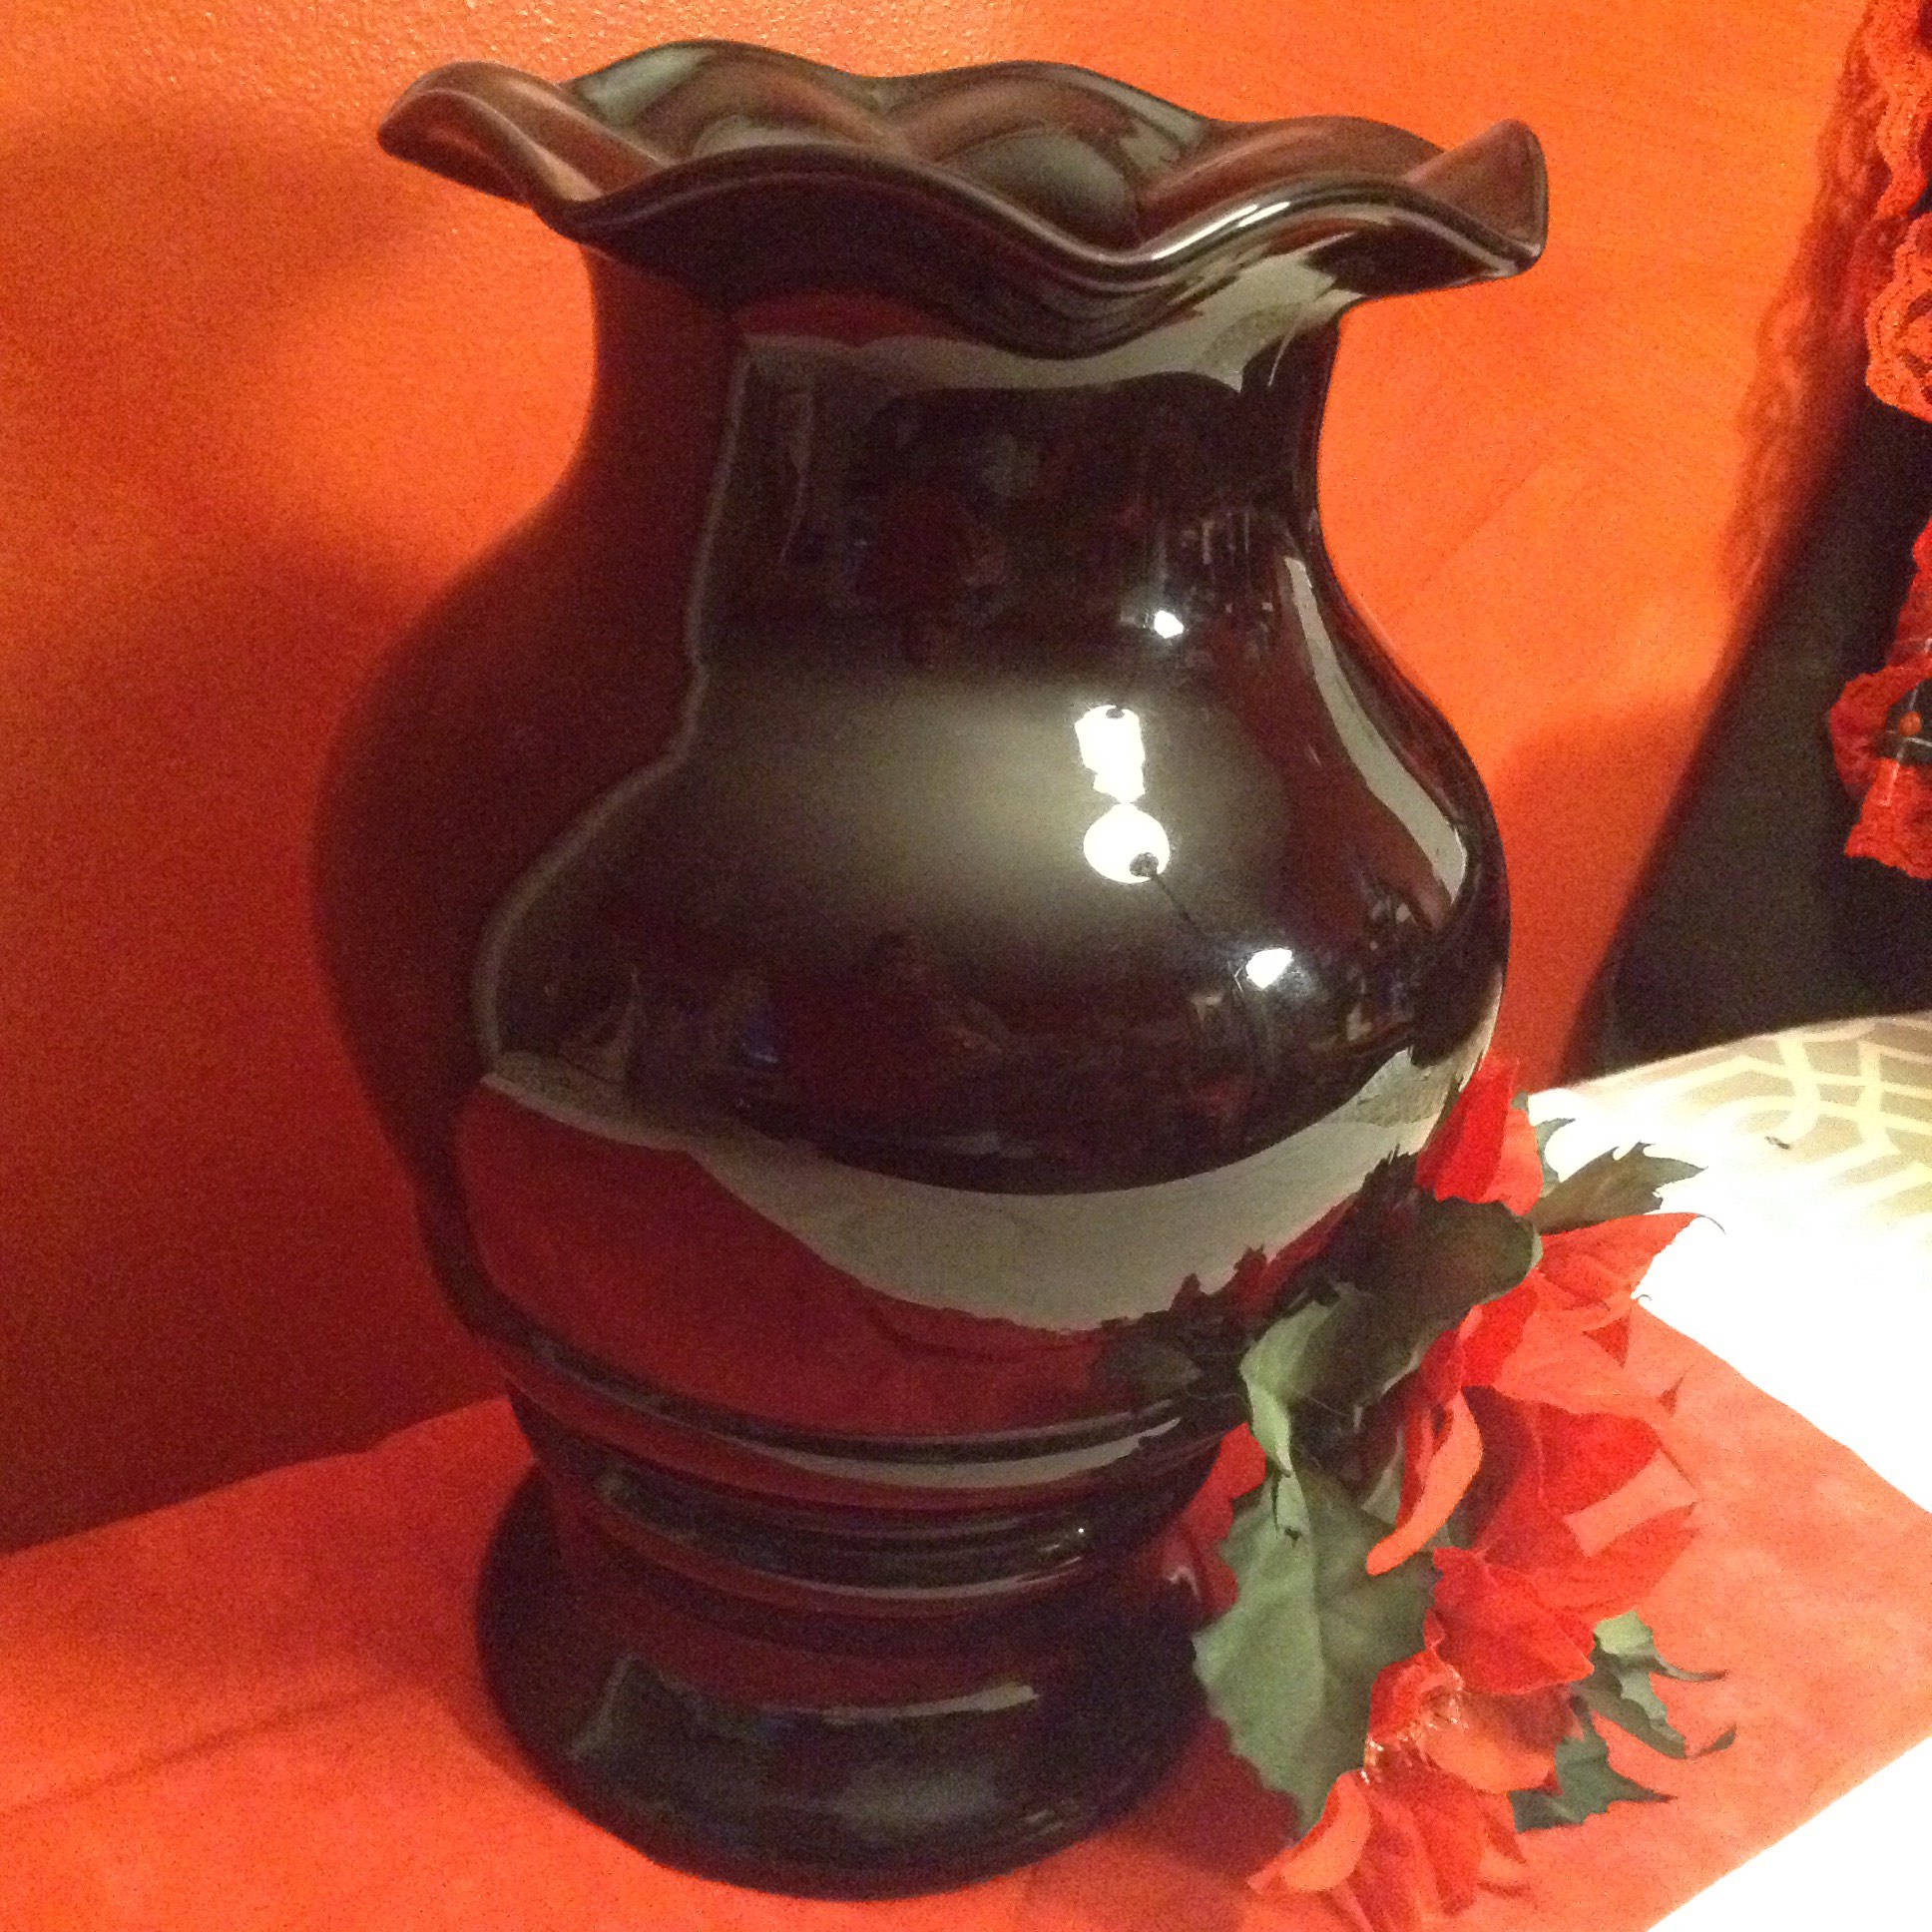 black amethyst vase with handles of vintage black amethyst vase etsy for dzoom